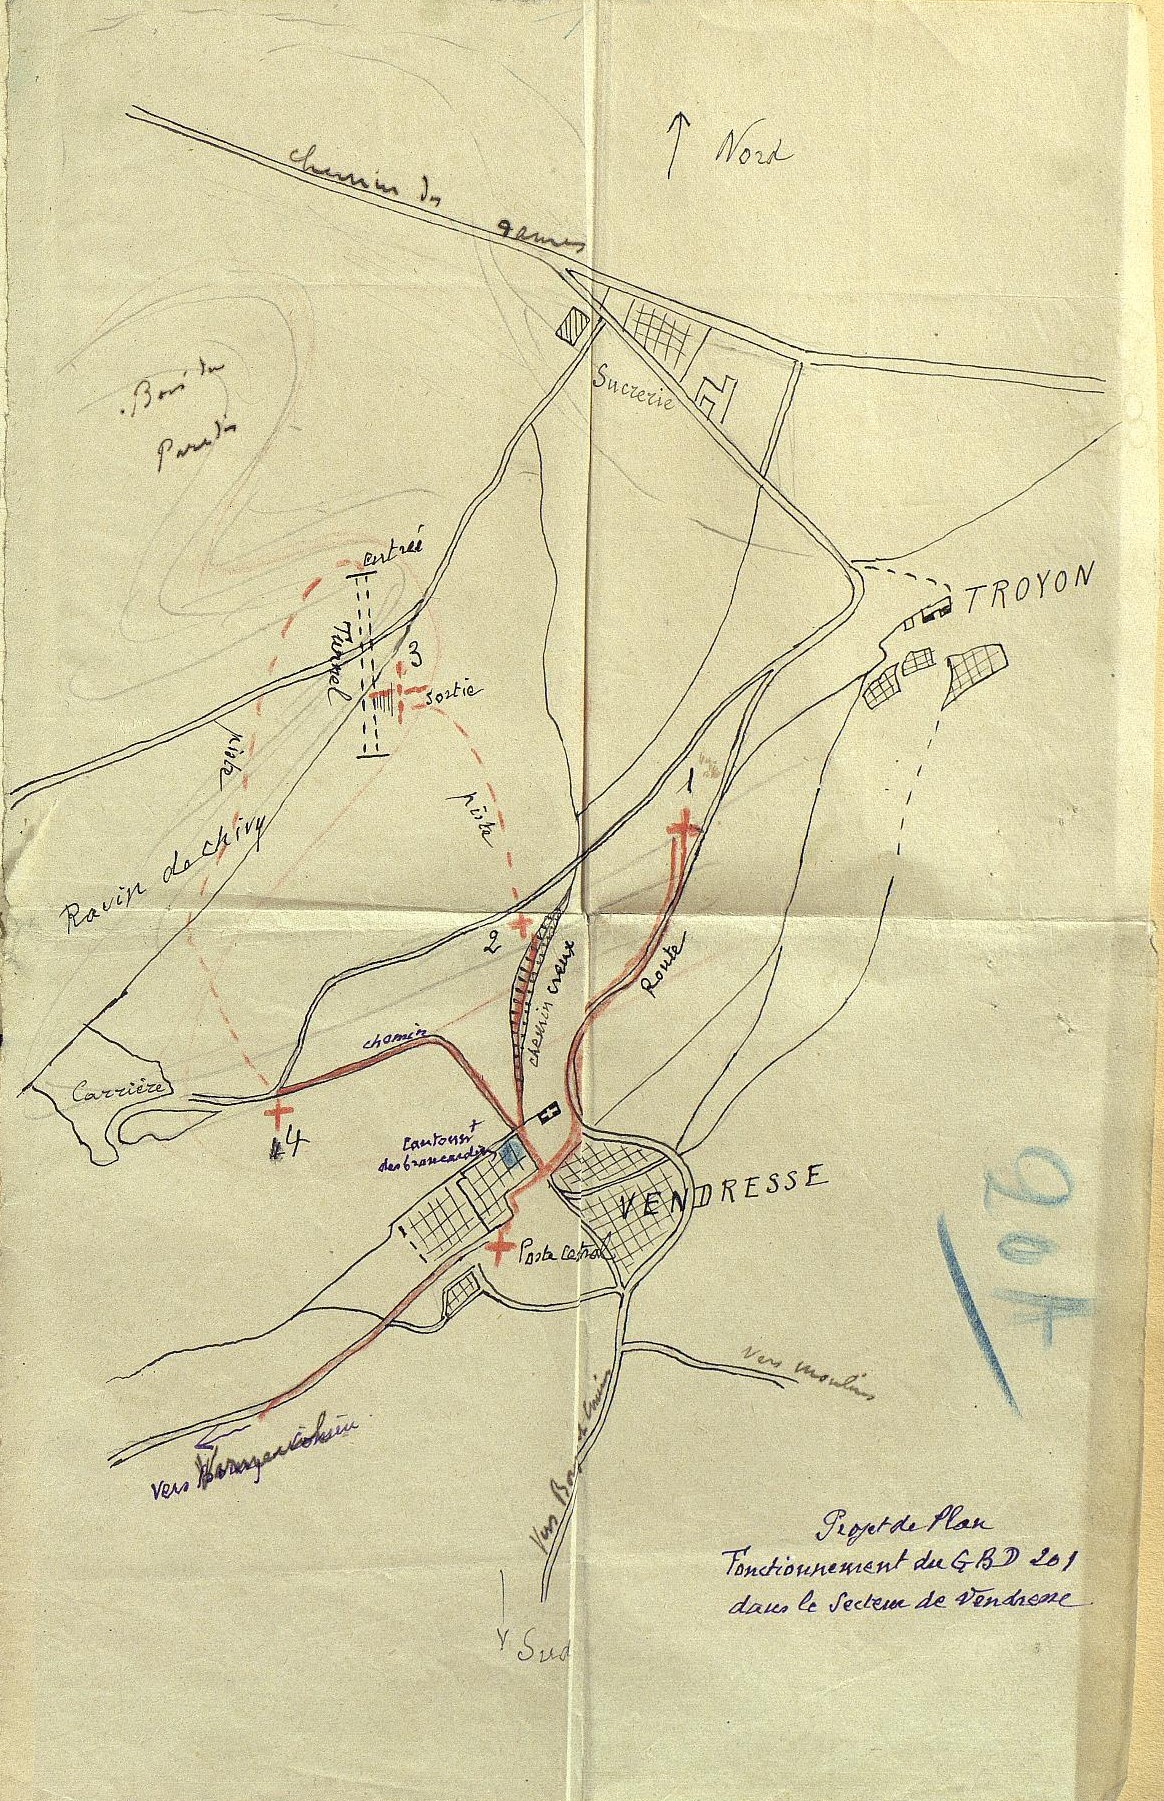 Fonctionnement du GBD de la 133e DI dans le secteur de Vendresse en avril 1917